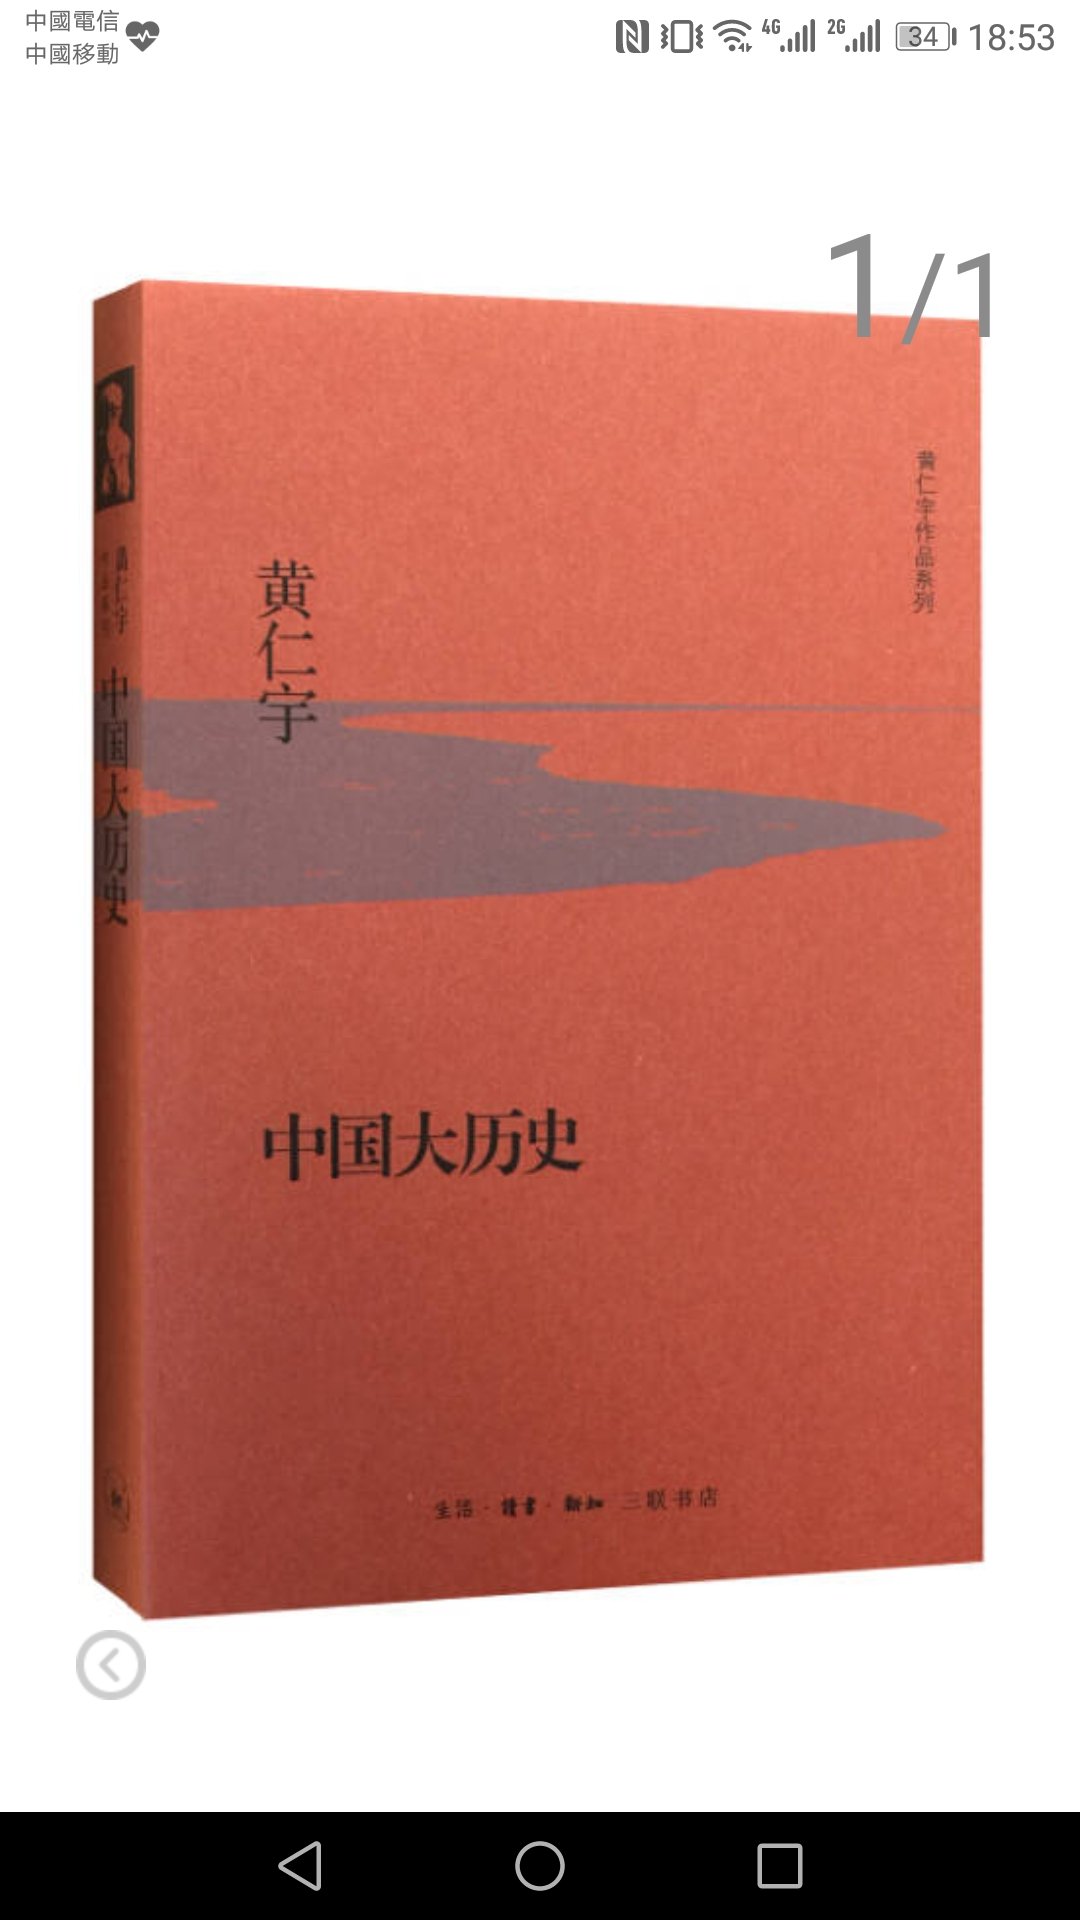 黄仁宇中国大历史，大师的著作值得思考阅读！